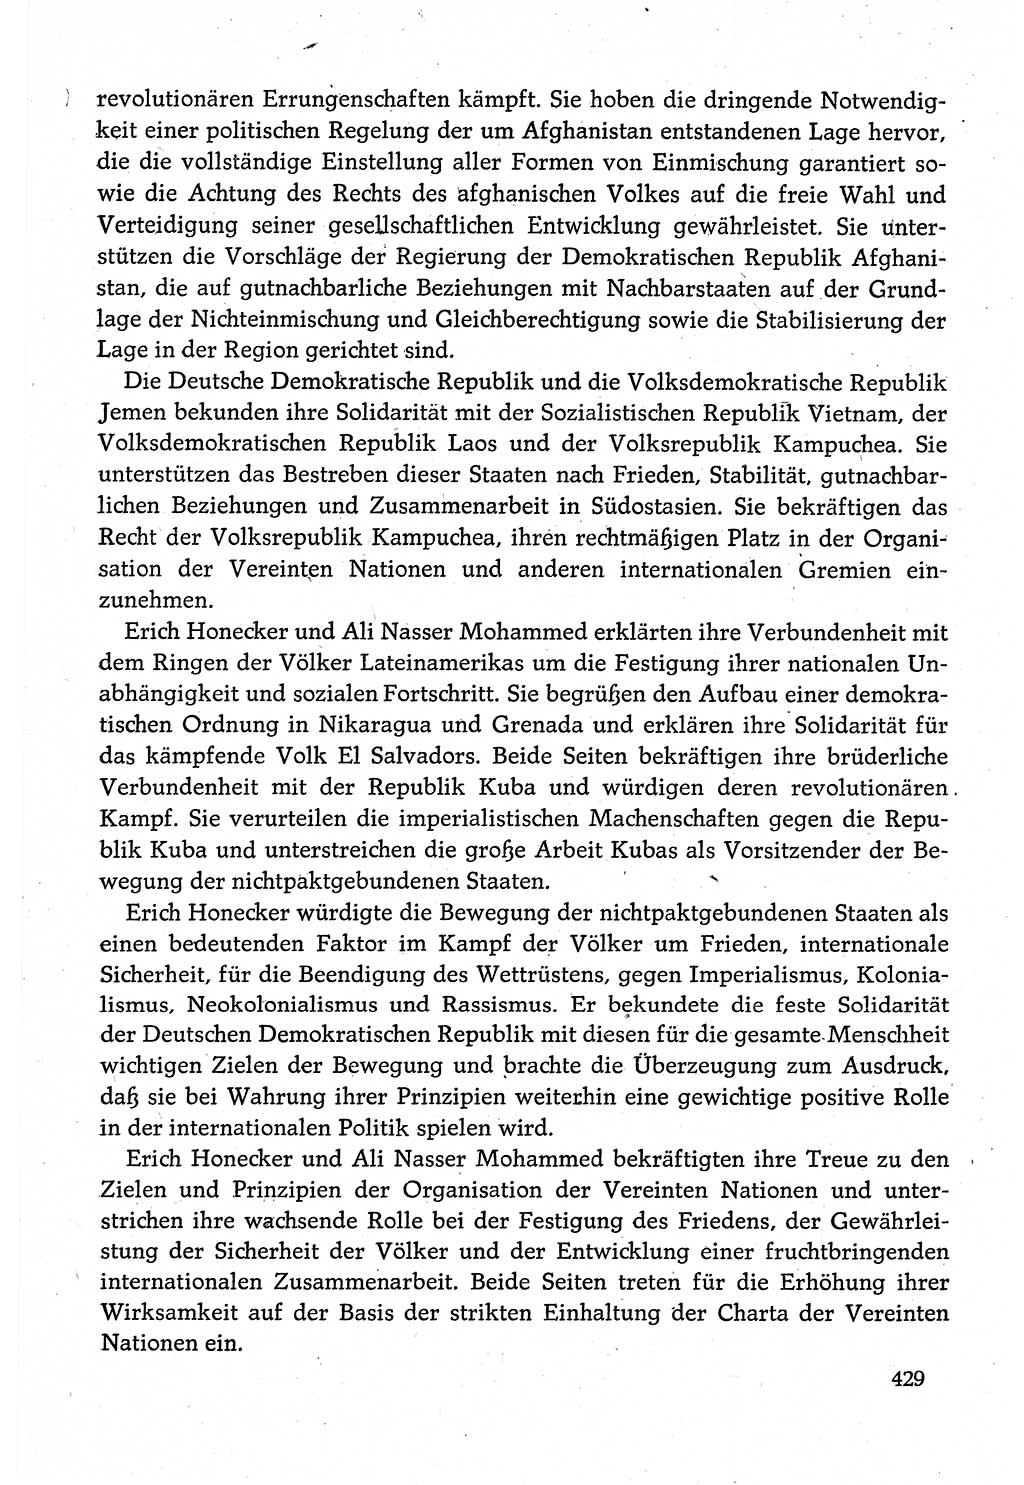 Dokumente der Sozialistischen Einheitspartei Deutschlands (SED) [Deutsche Demokratische Republik (DDR)] 1980-1981, Seite 429 (Dok. SED DDR 1980-1981, S. 429)